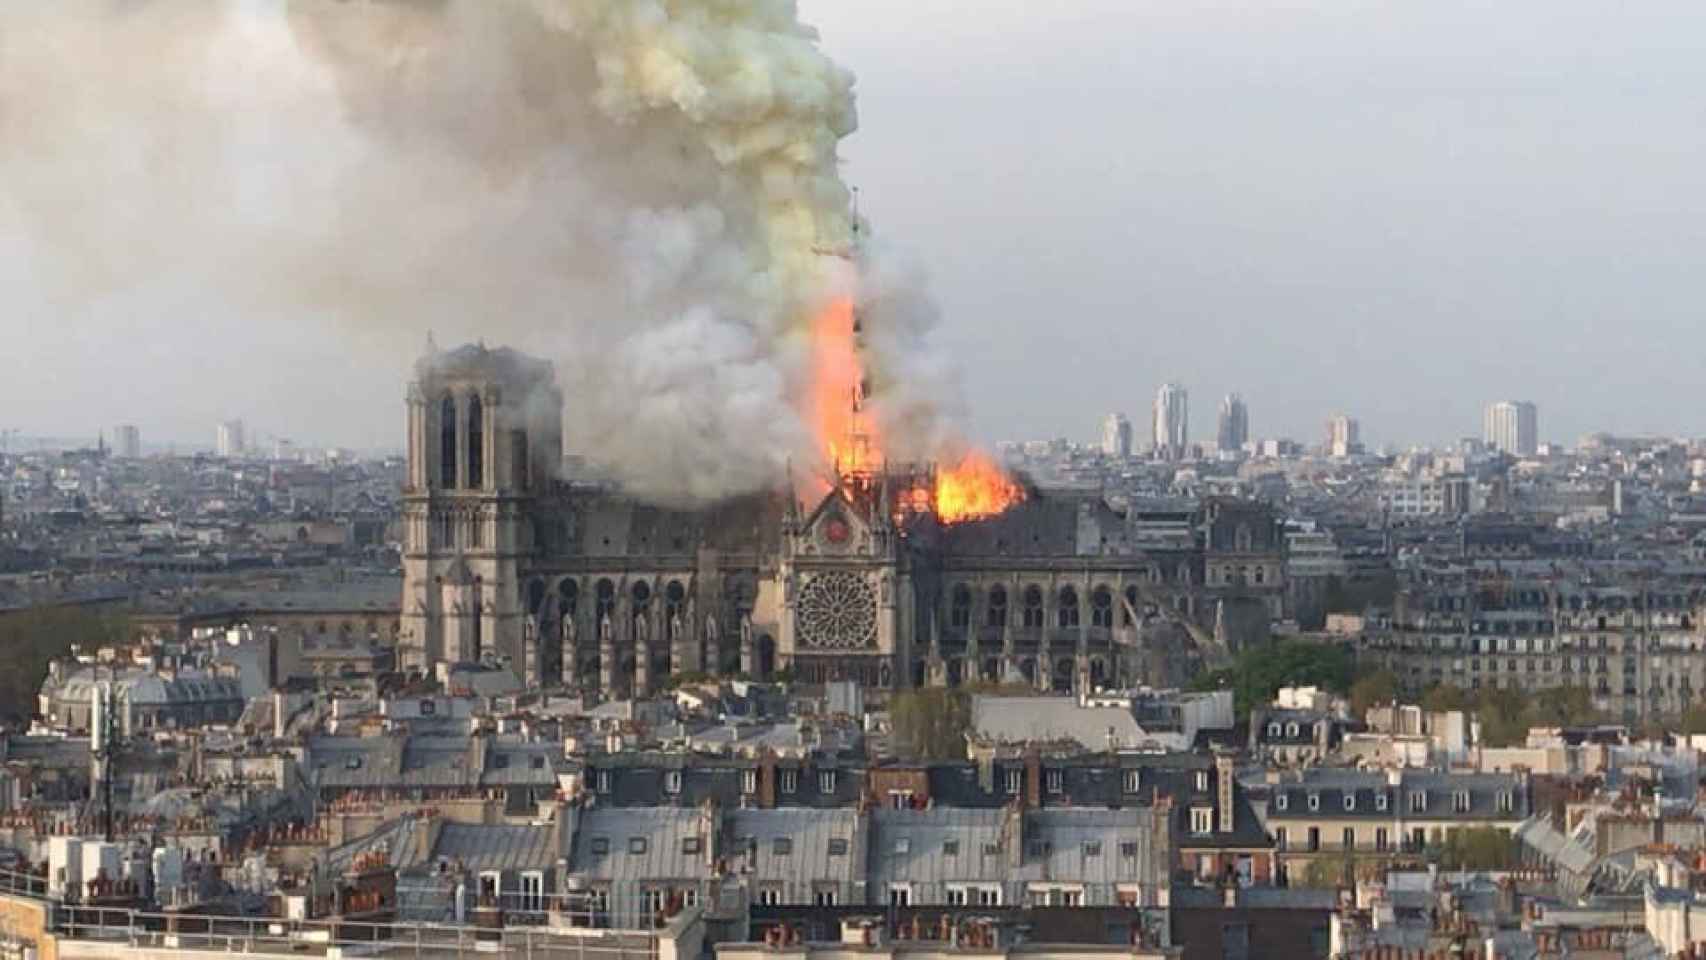 Imágenes: el espectacular incendio en la catedral de Notre Dame en París